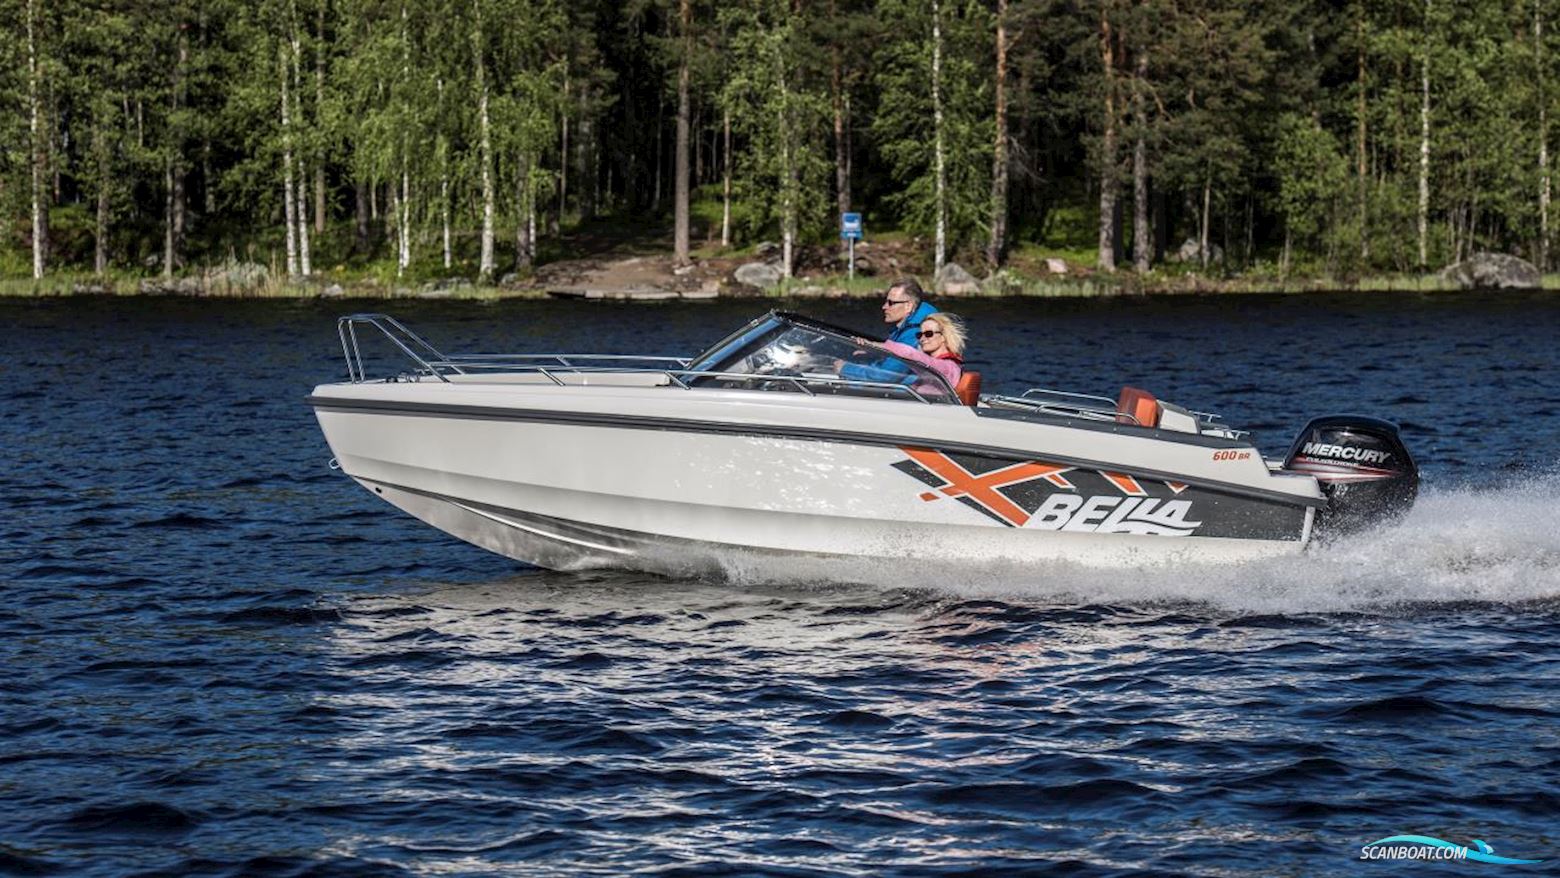 Bella 600 BR Motorbåt 2016, med Mercury motor, Sverige